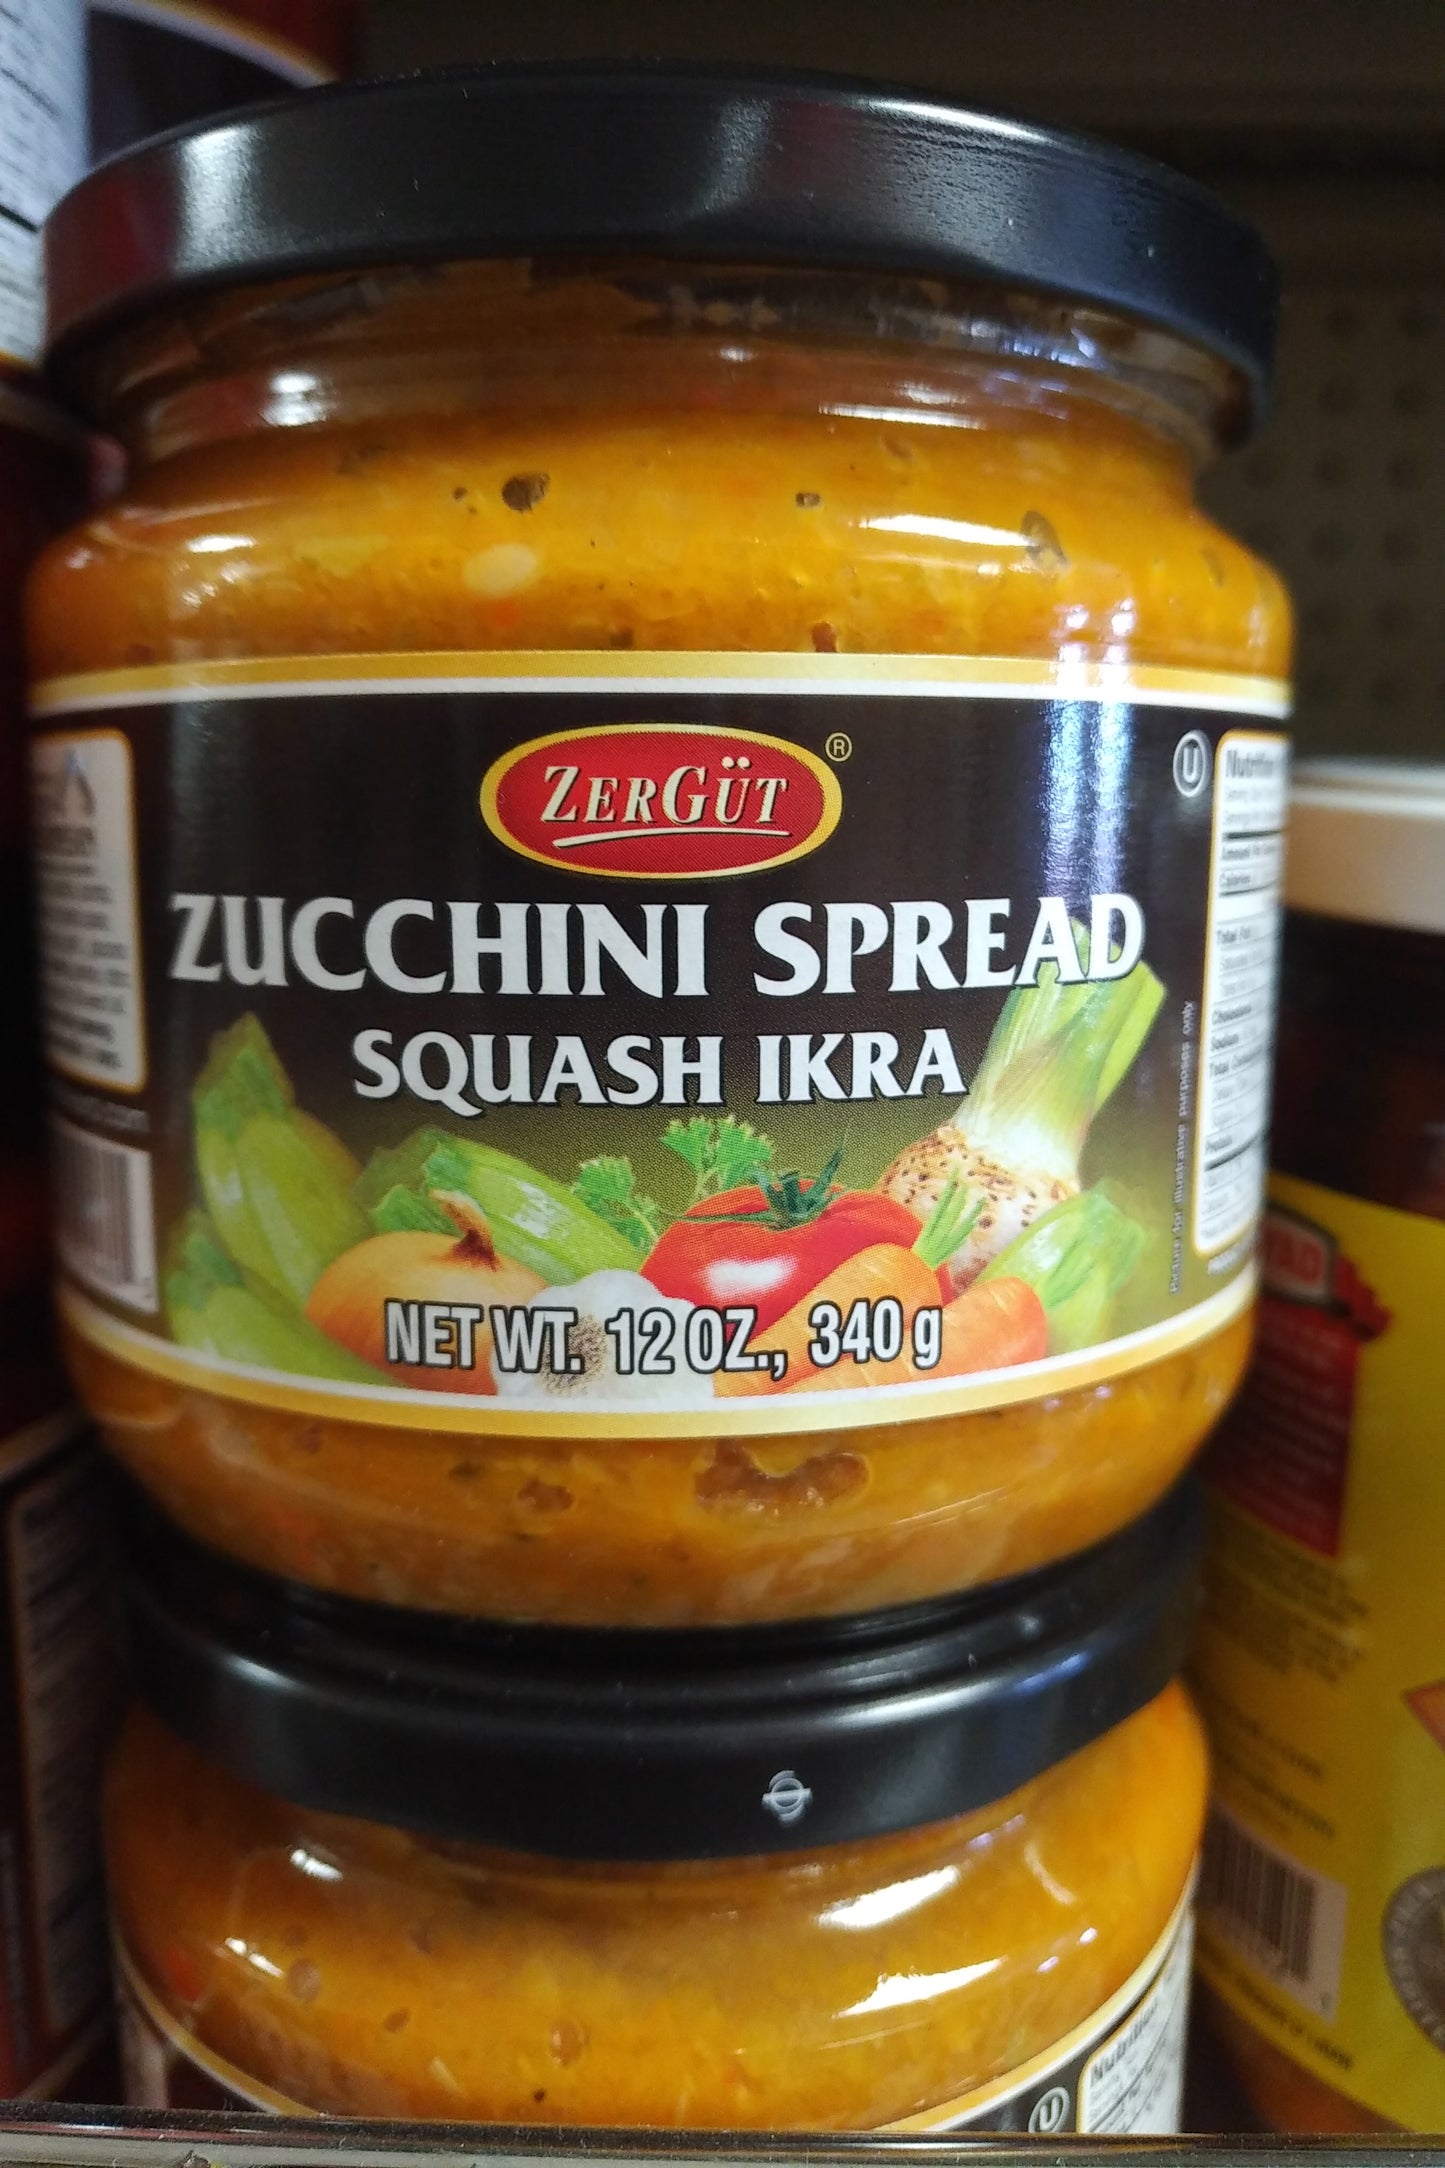 Zergut Zucchini Spread Squash Ikra 12oz